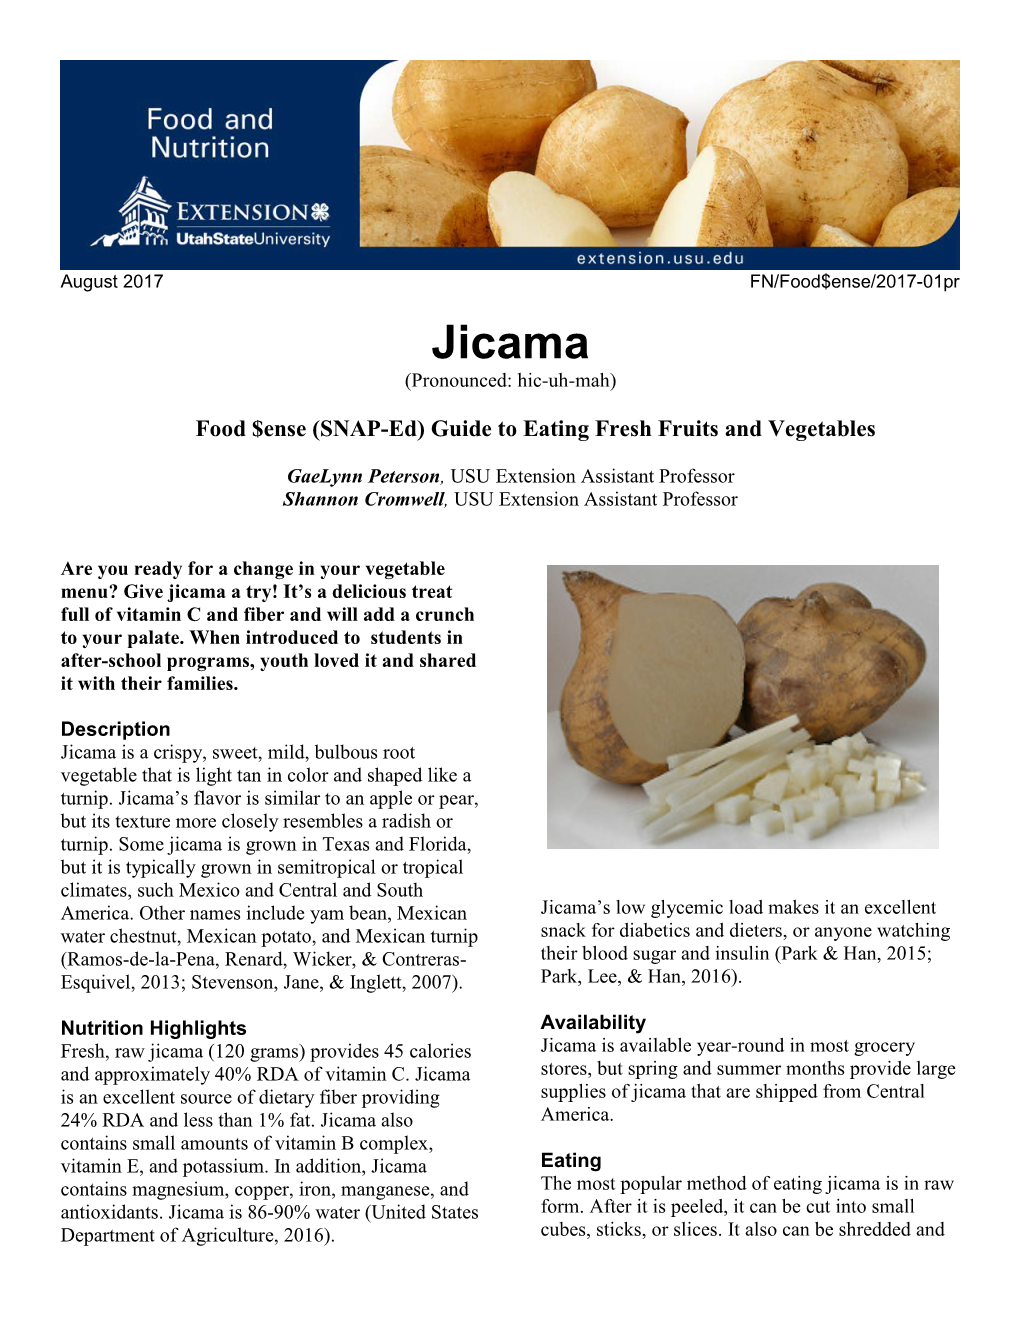 Jicama (Pronounced: Hic-Uh-Mah)